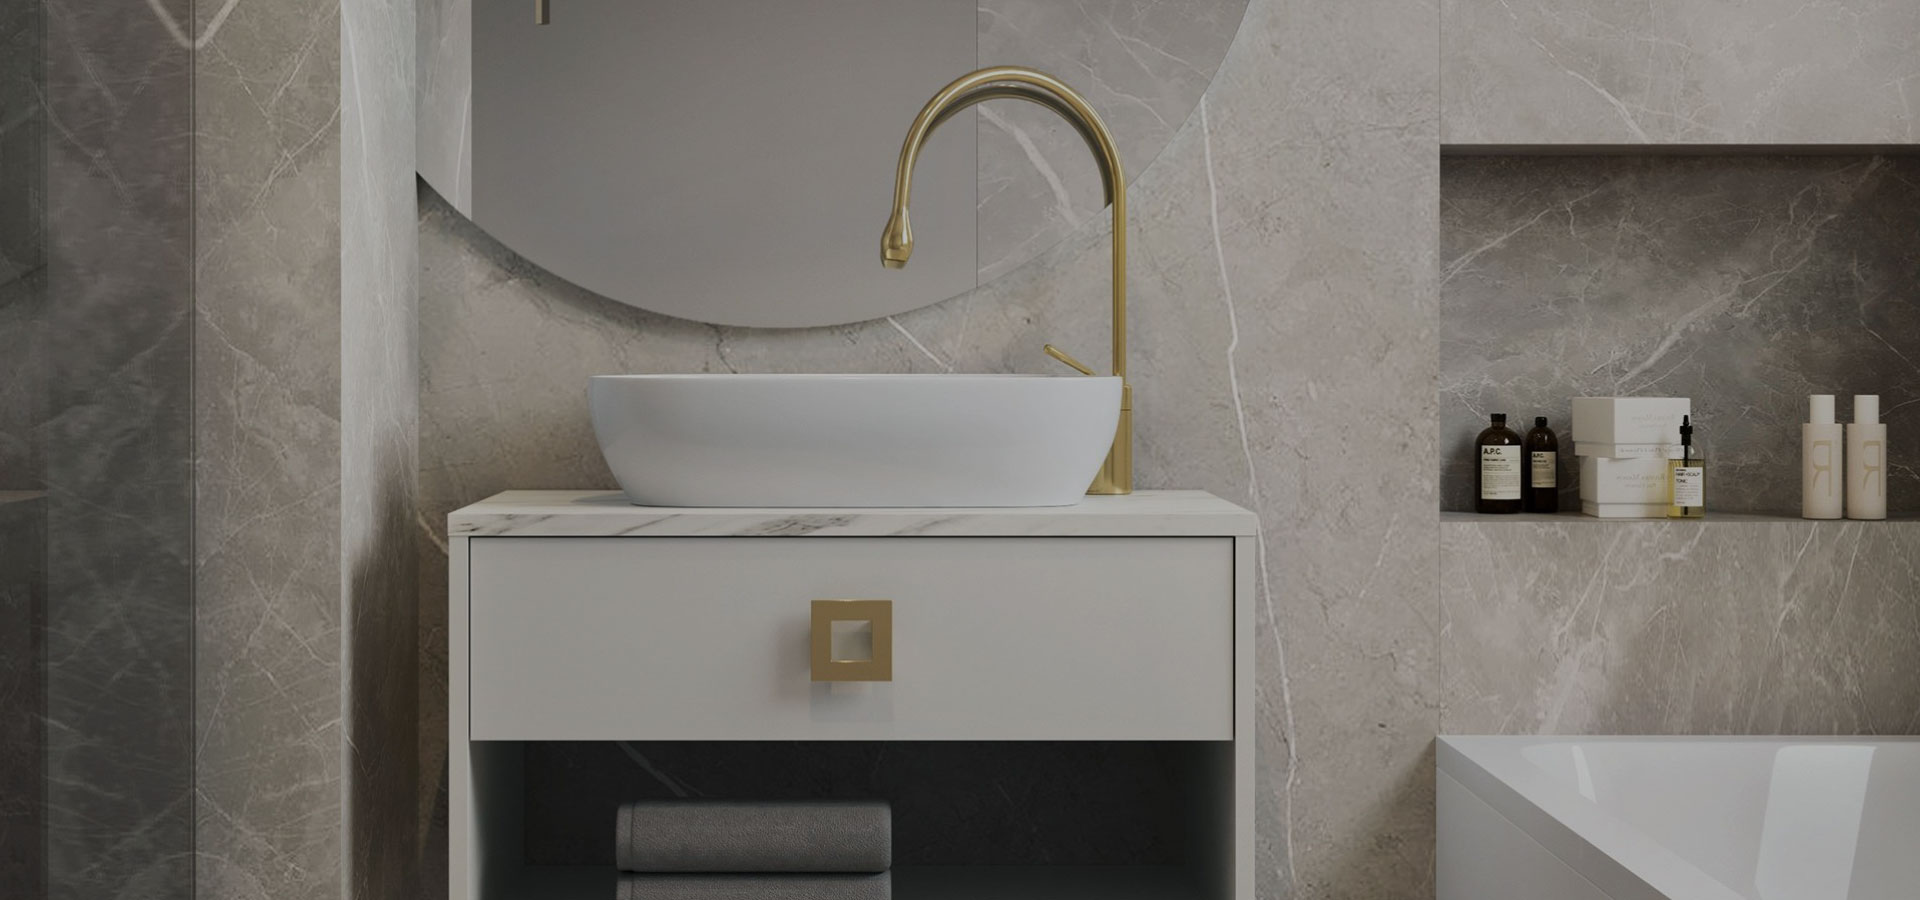 Beżowa, elegancka łazienka z płytkami ze wzorem marmuru i półokrągłym lustrem zawieszonym nad szafką pod umywalkę ze złotym uchwytem i otwartą półką na ręczniki.